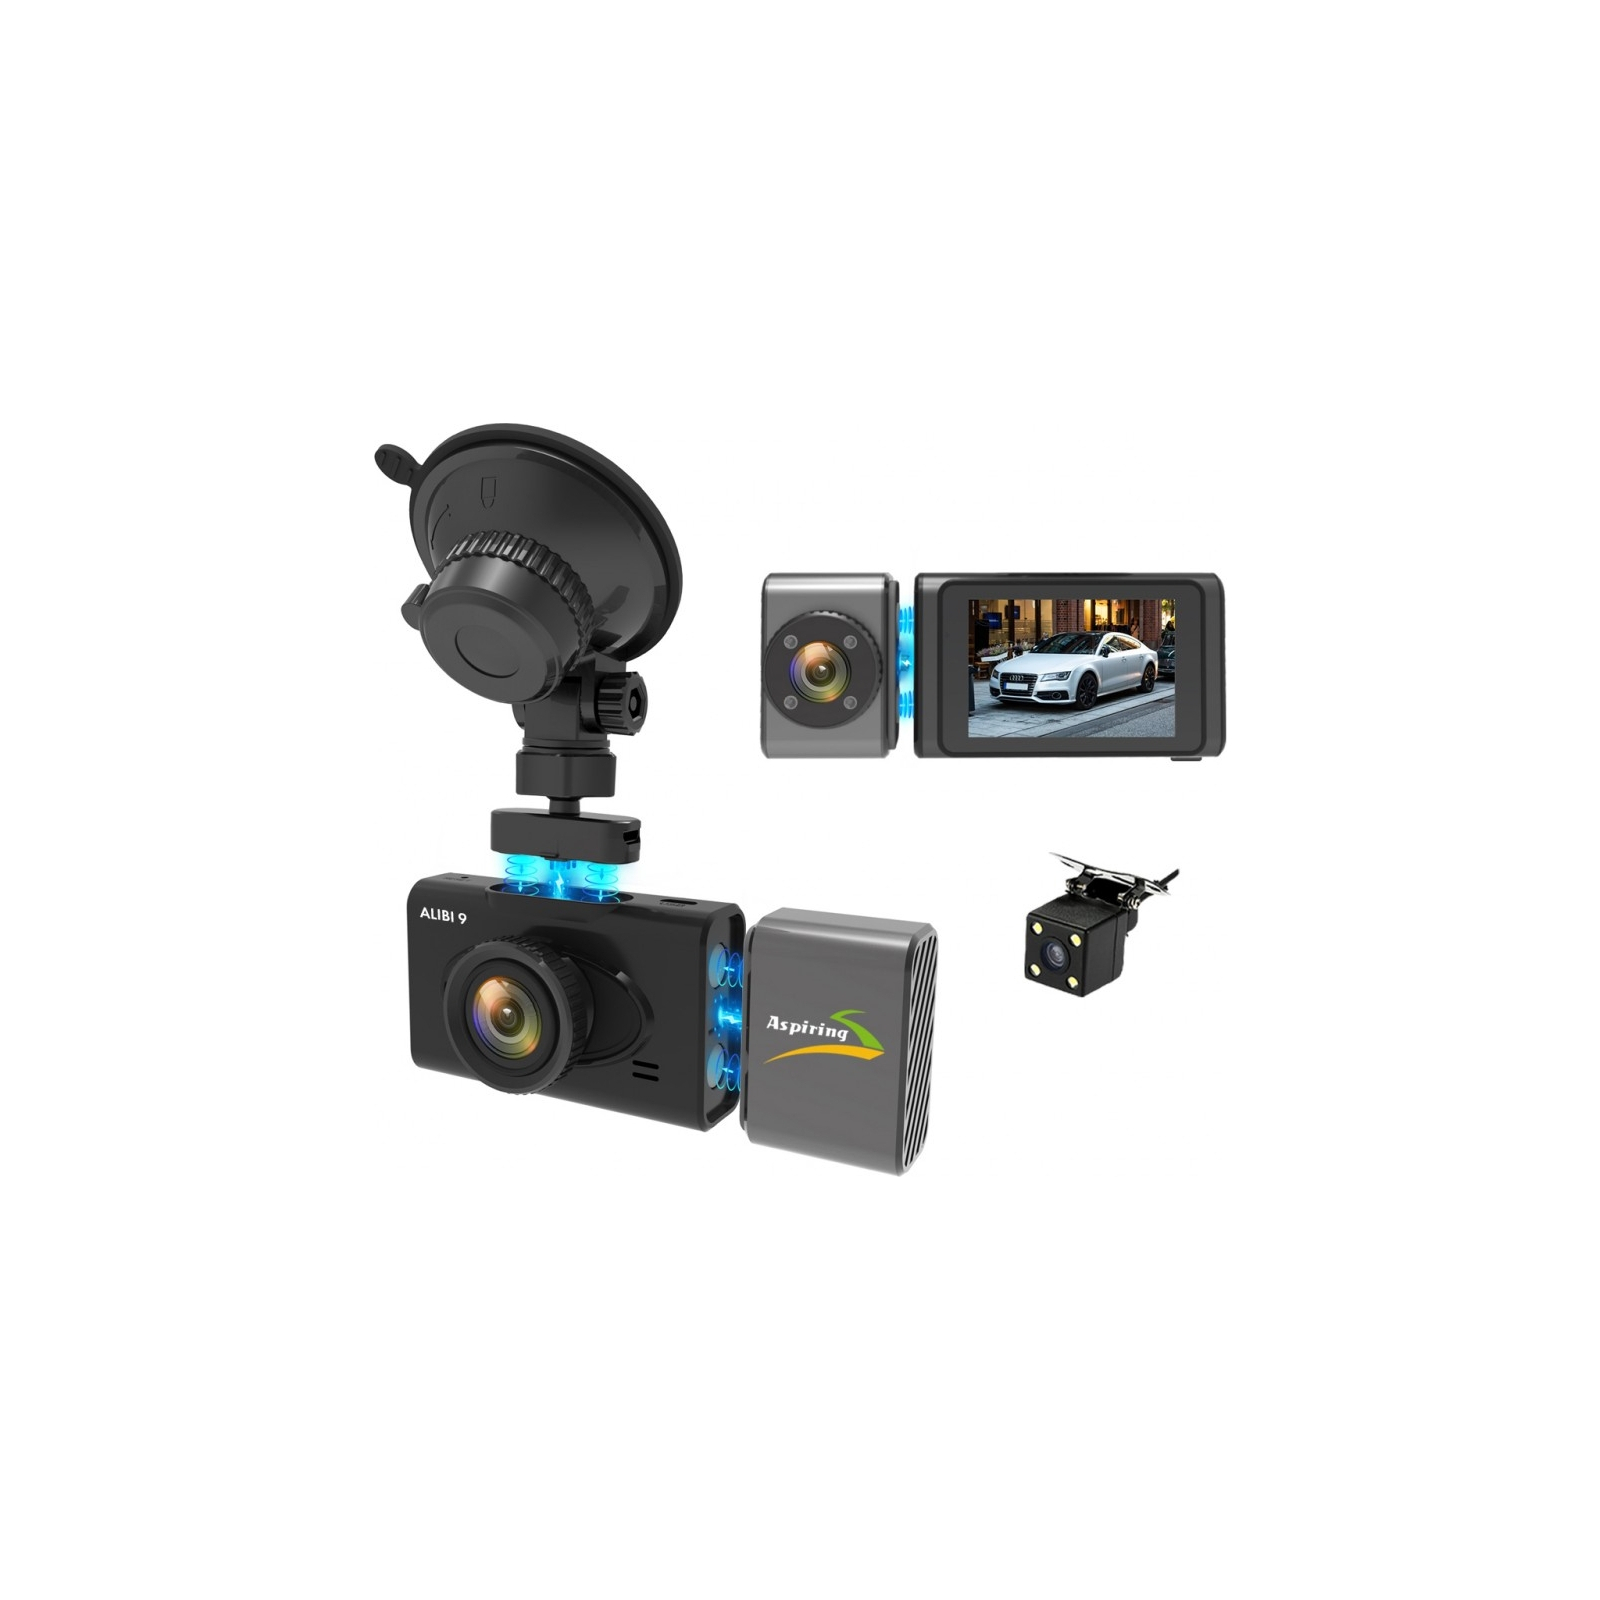 Видеорегистратор Aspiring Alibi 9 GPS, 3 Cameras, Speedcam (Aspiring Alibi 9 GPS, 3 Cameras, Speedcam) изображение 6